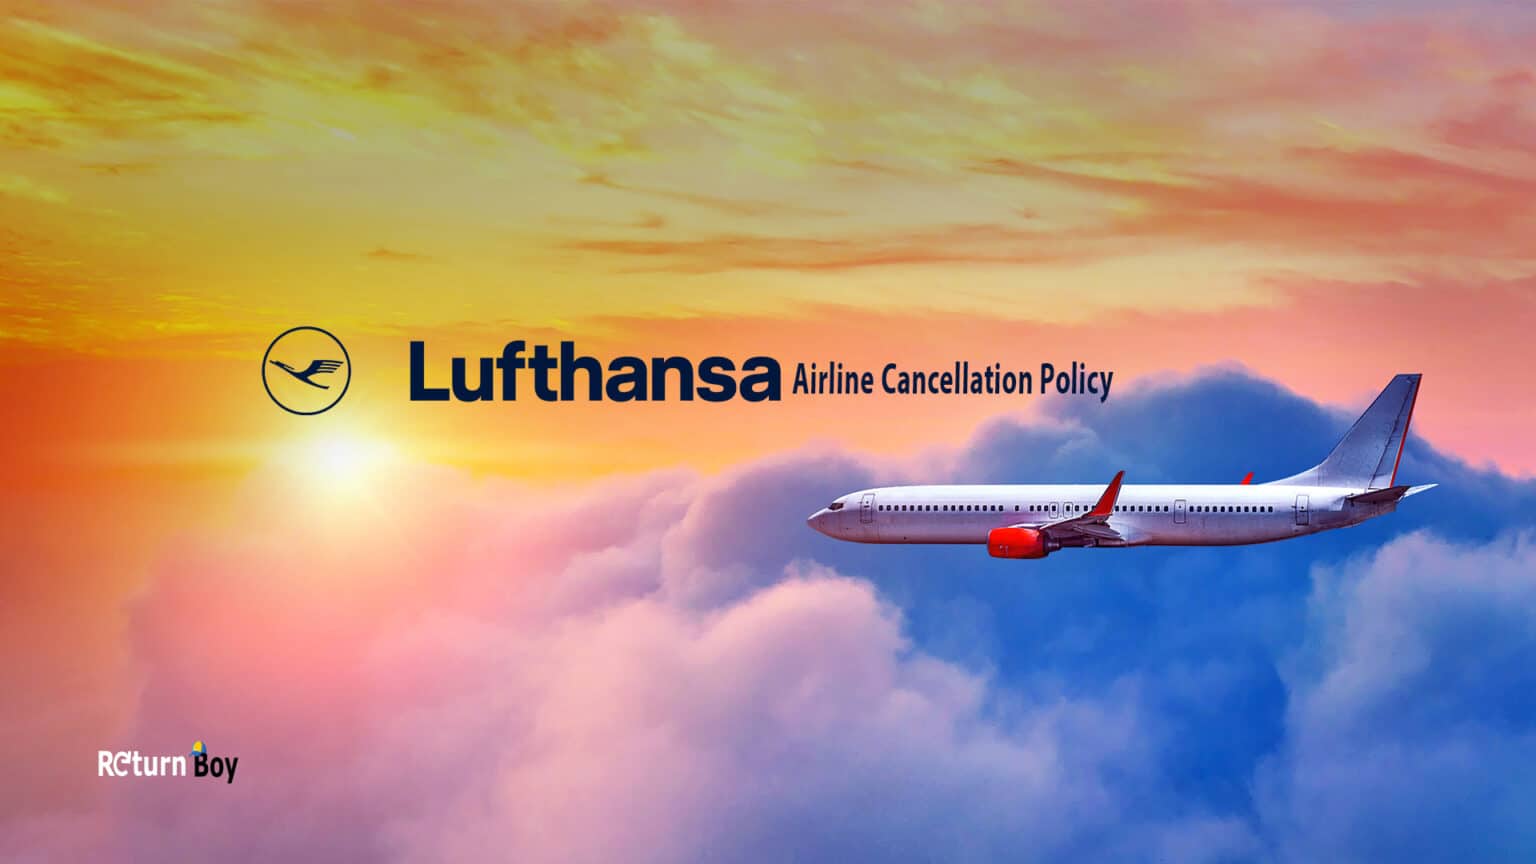 lufthansa-cancellation-policy-return-boy